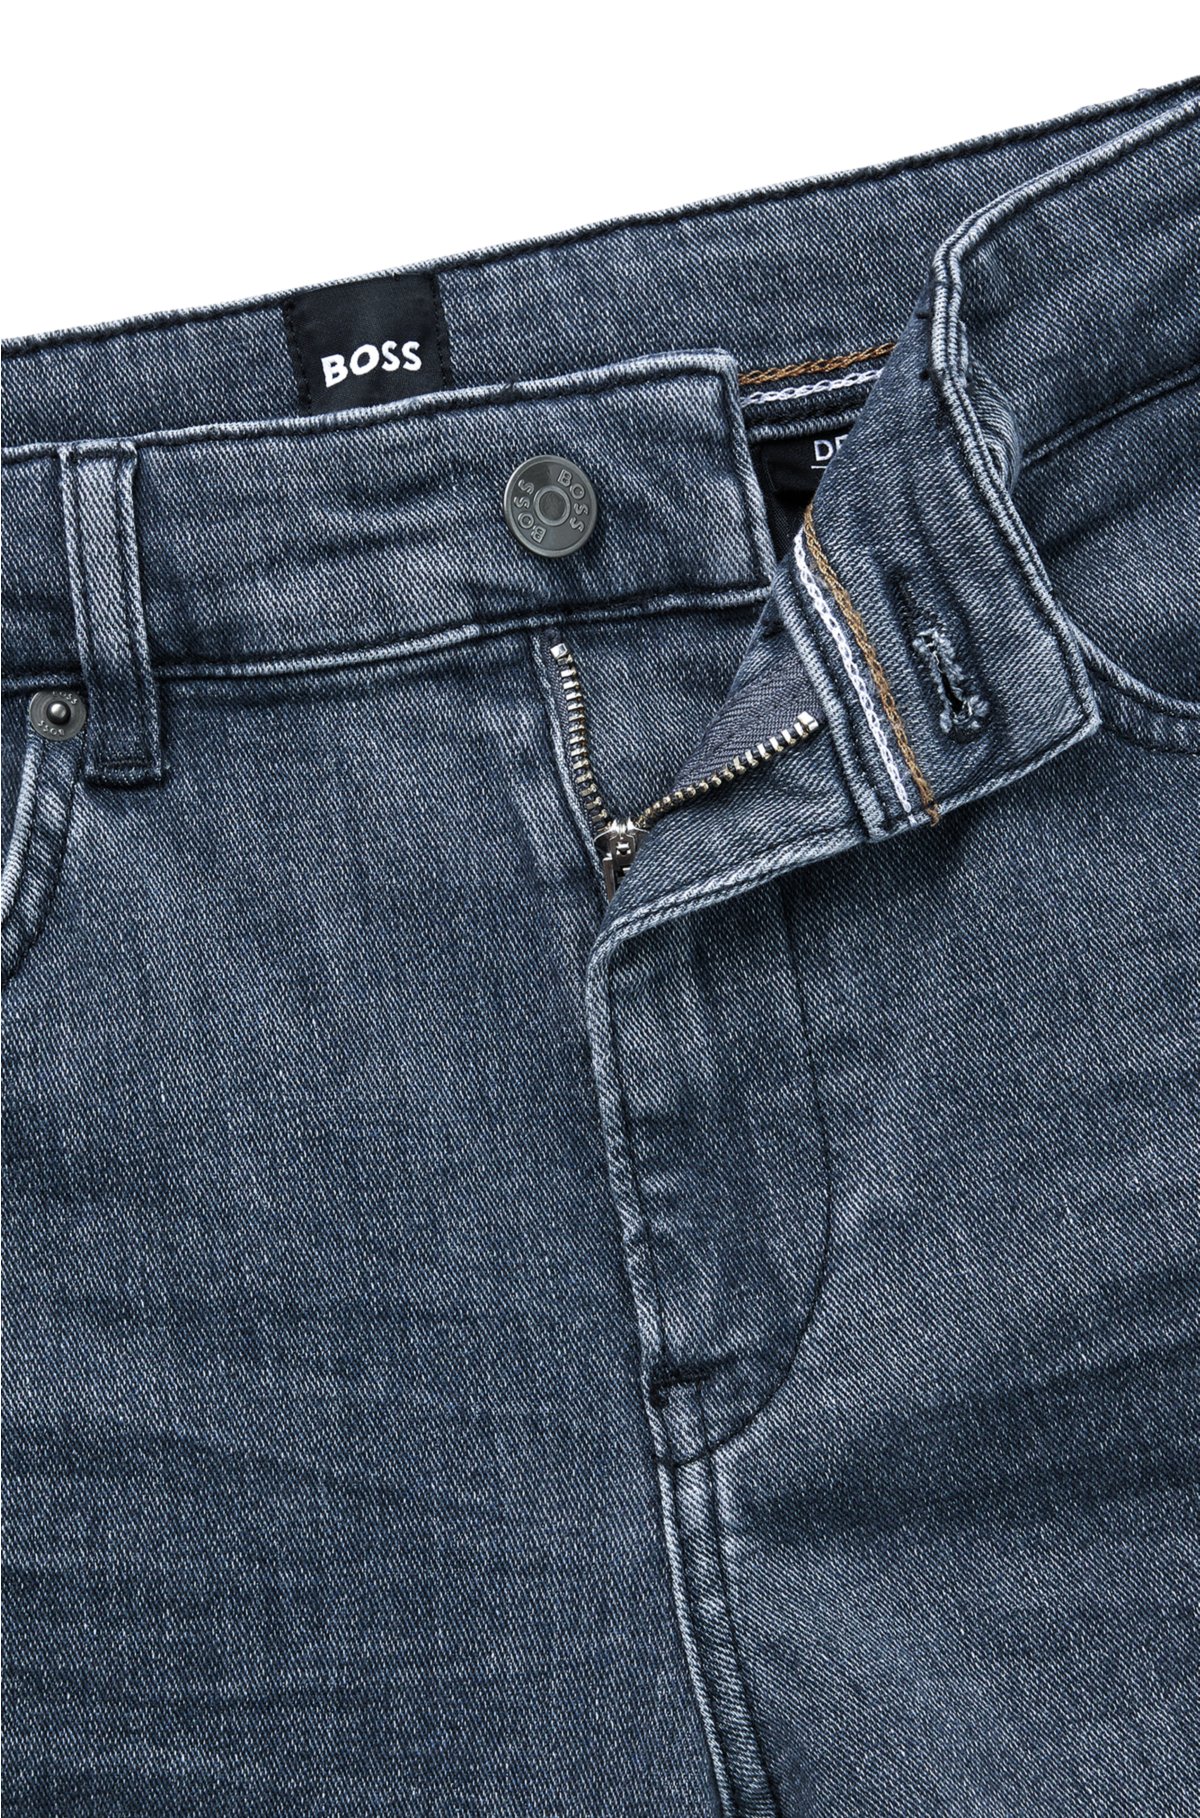 - Slim-fit jeans in gray Italian denim